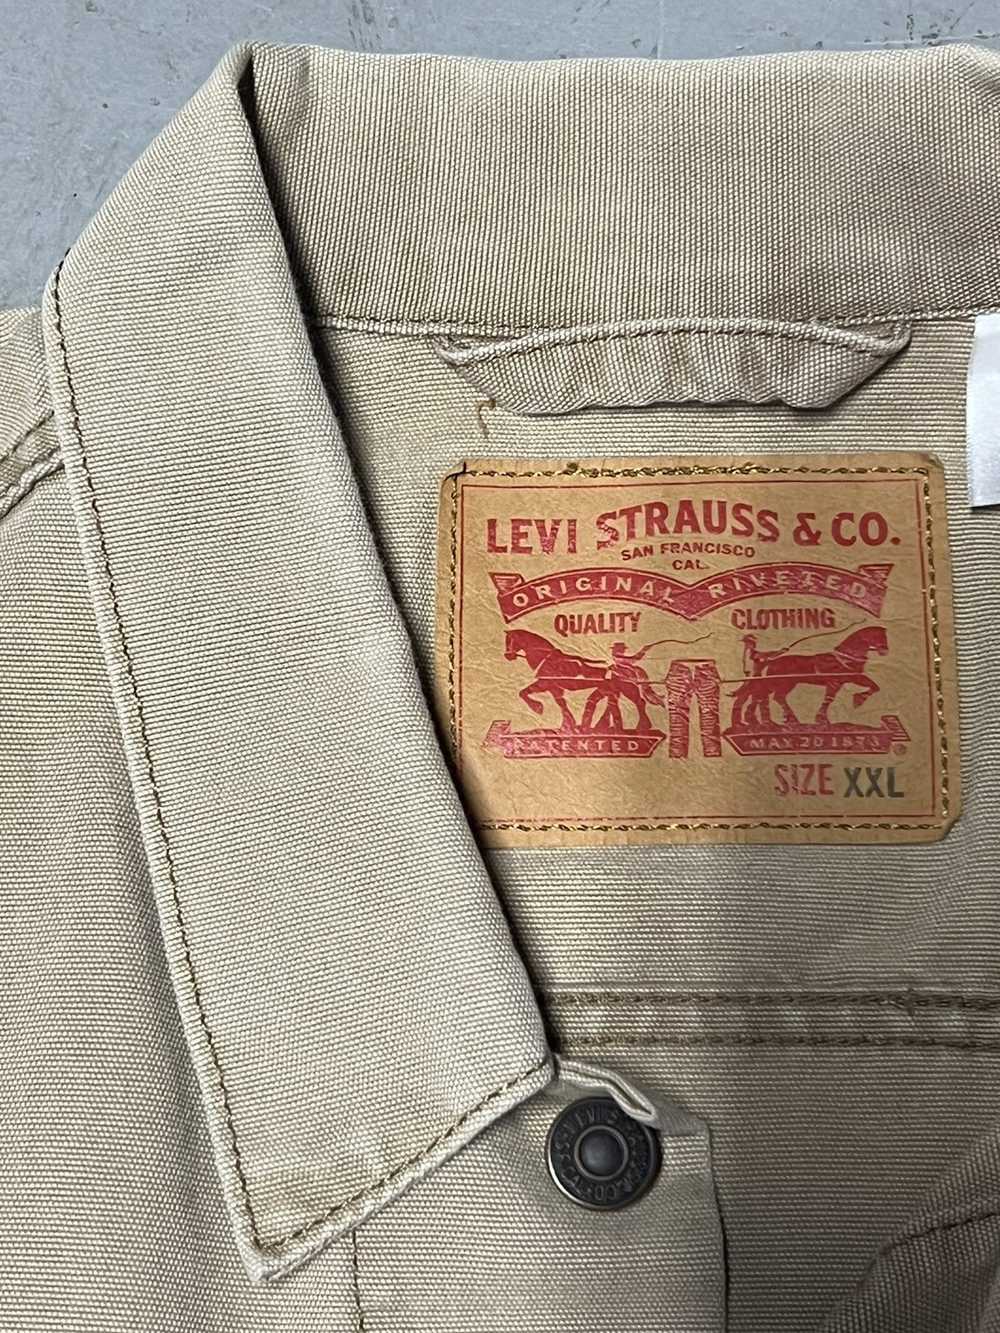 Levi's Vintage Levi’s canvas jacket - image 3